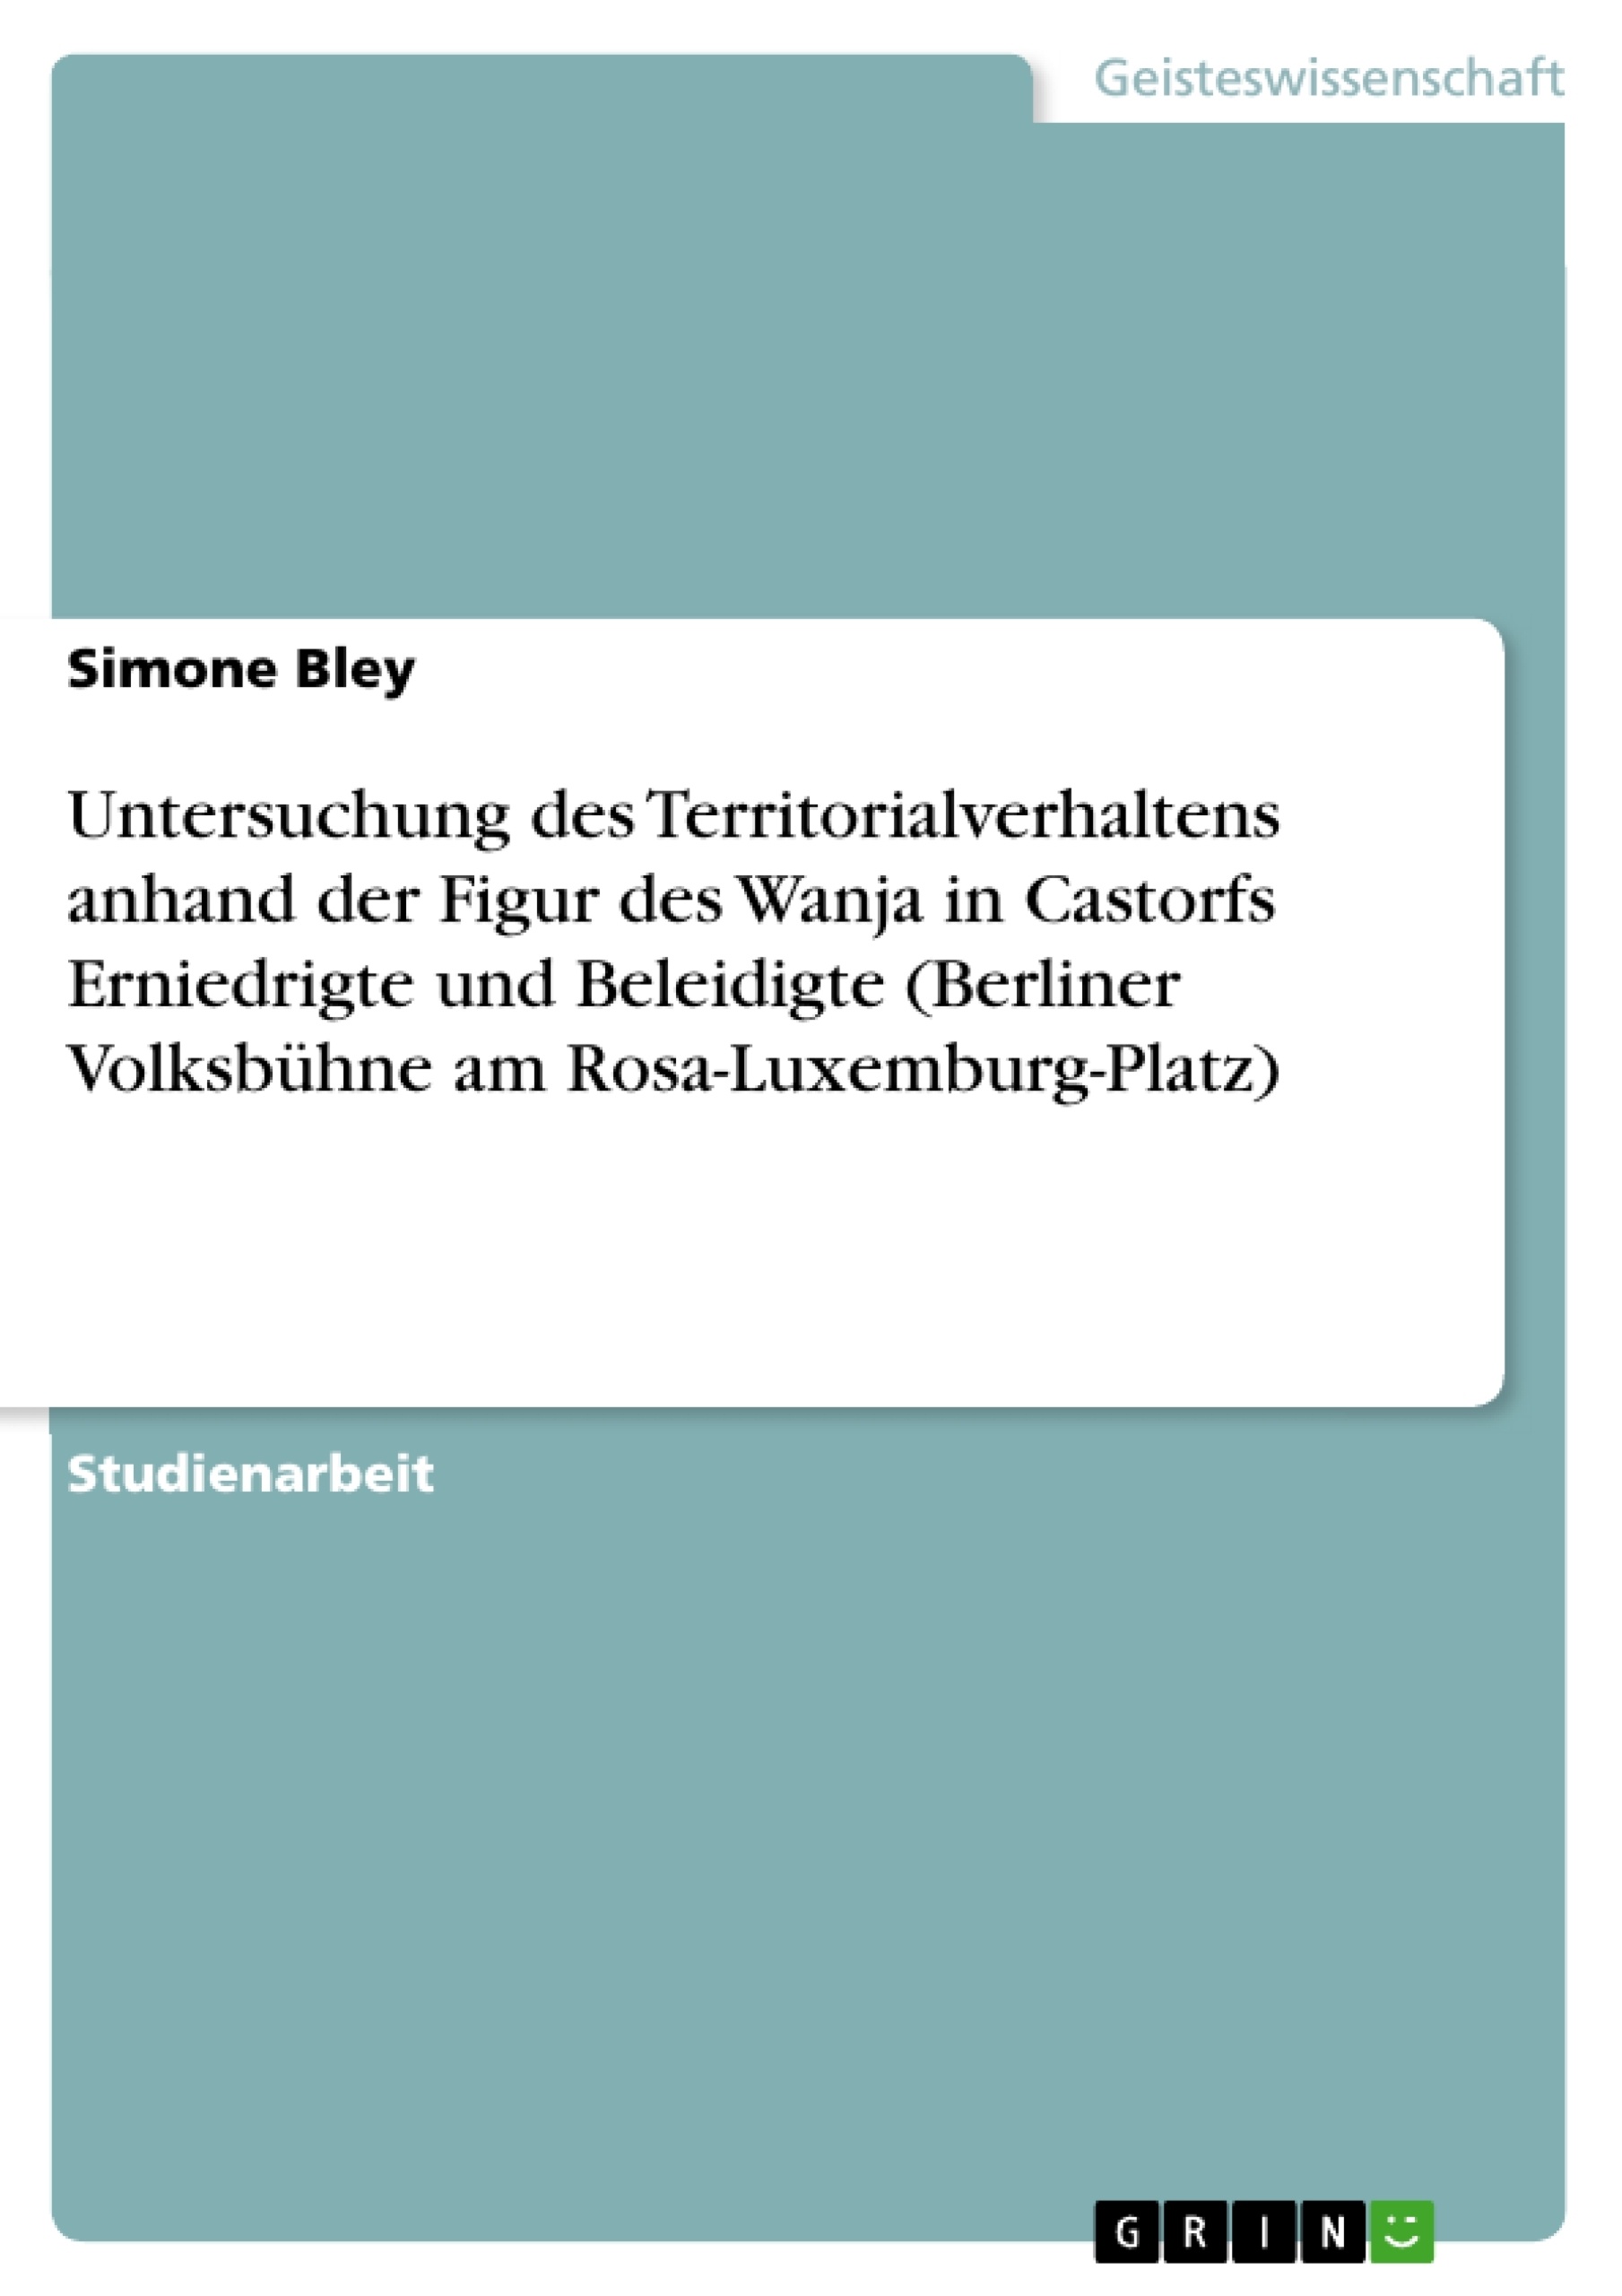 Titre: Untersuchung des Territorialverhaltens anhand der Figur des Wanja in Castorfs  Erniedrigte und Beleidigte  (Berliner Volksbühne am Rosa-Luxemburg-Platz)